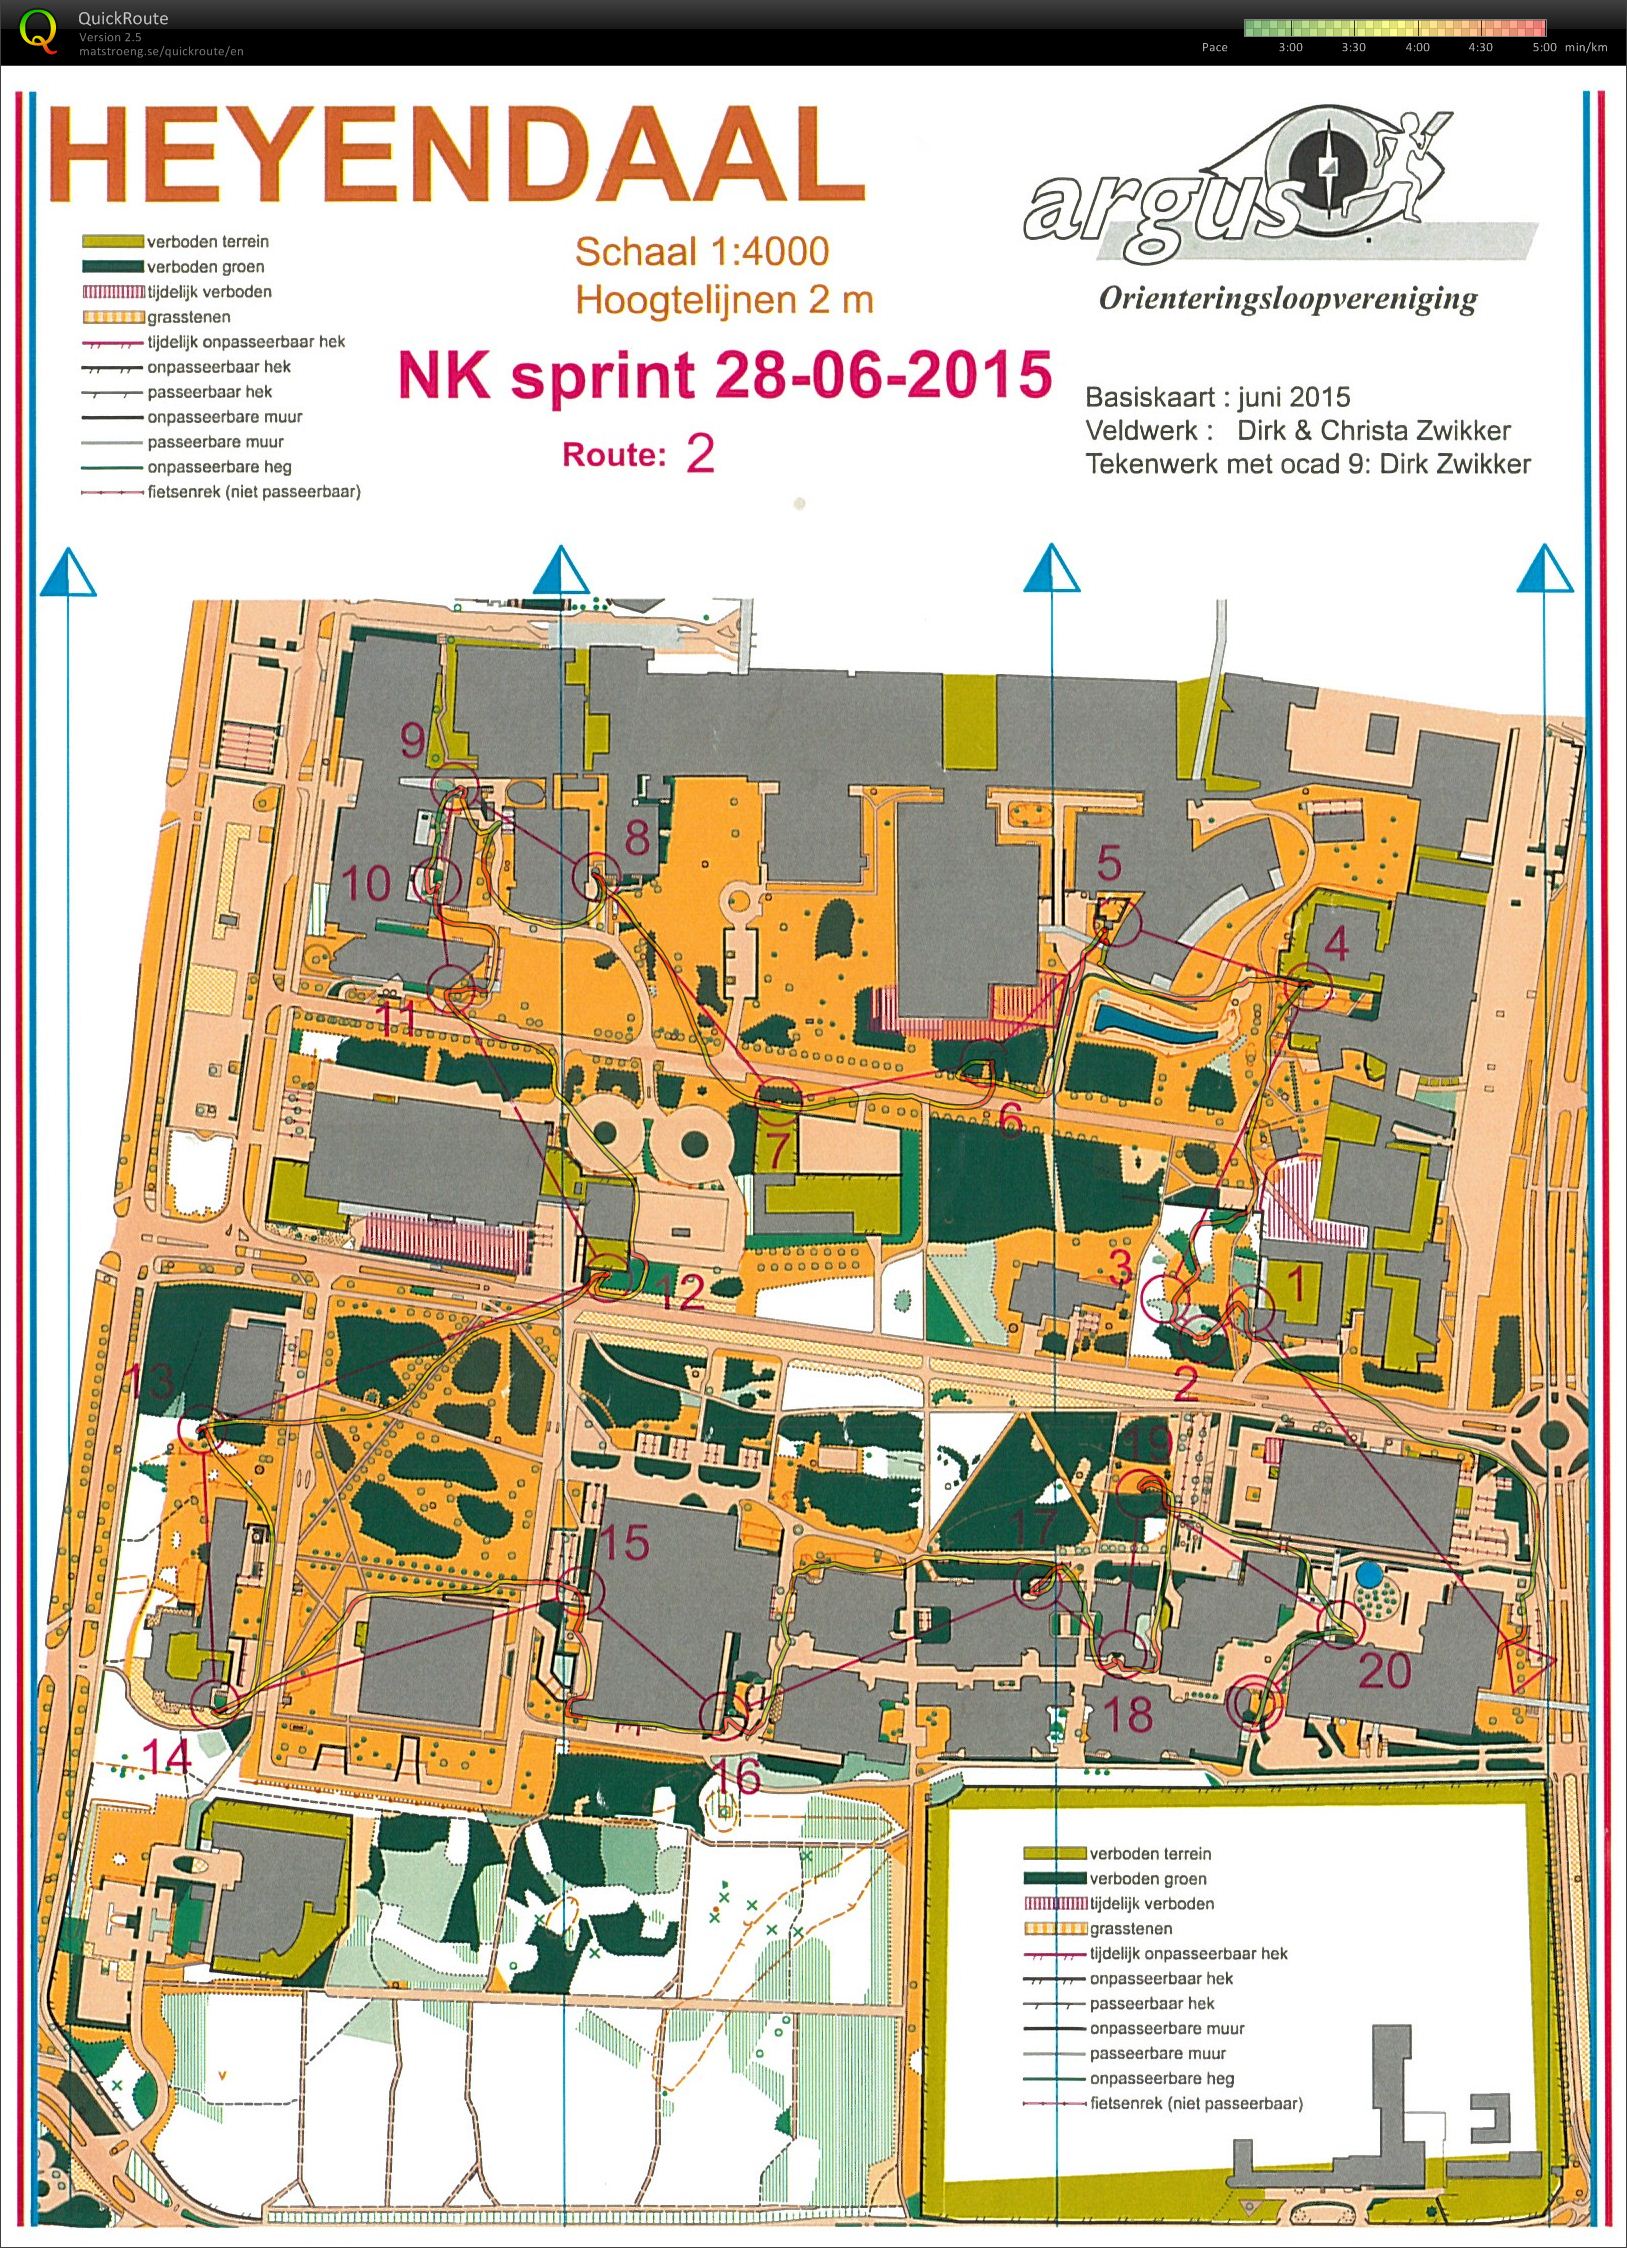 NK Sprint Heyendaal (2015-06-28)